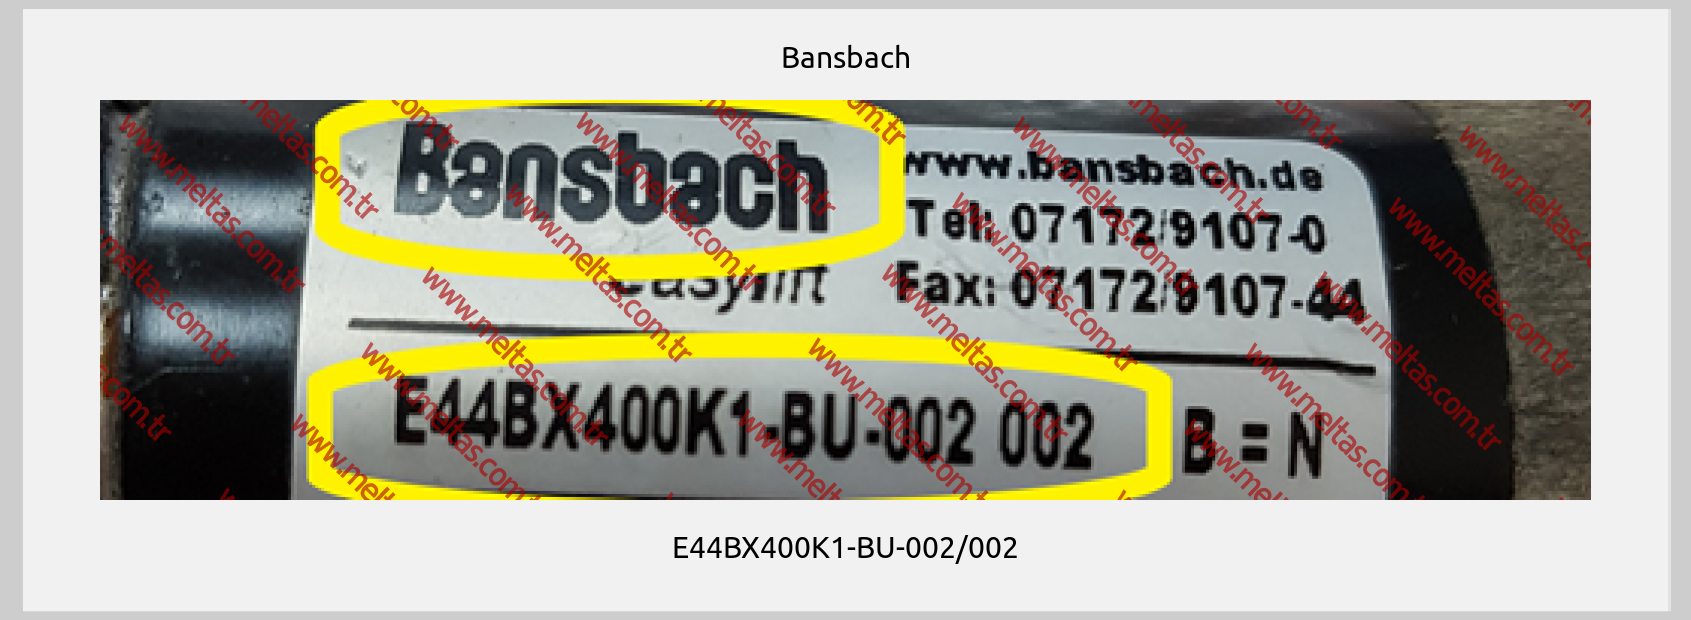 Bansbach - E44BX400K1-BU-002/002